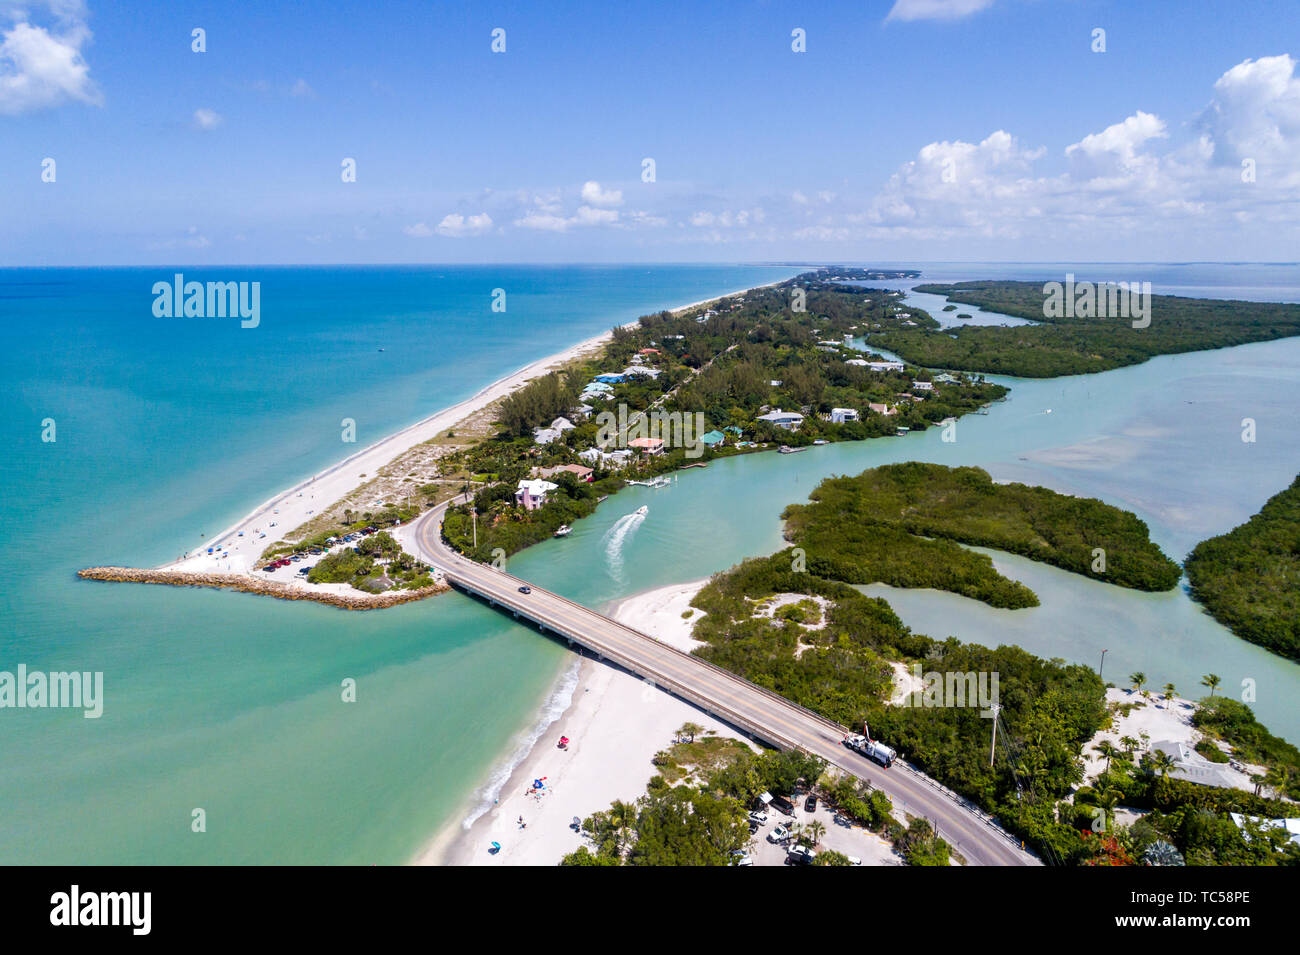 Floride, Captiva Island Sanibel Island, Golfe du Mexique Turner Blind Pass Beach Park, Albright Island Key Preserve Patterson, vue aérienne au-dessus, FL190514 Banque D'Images